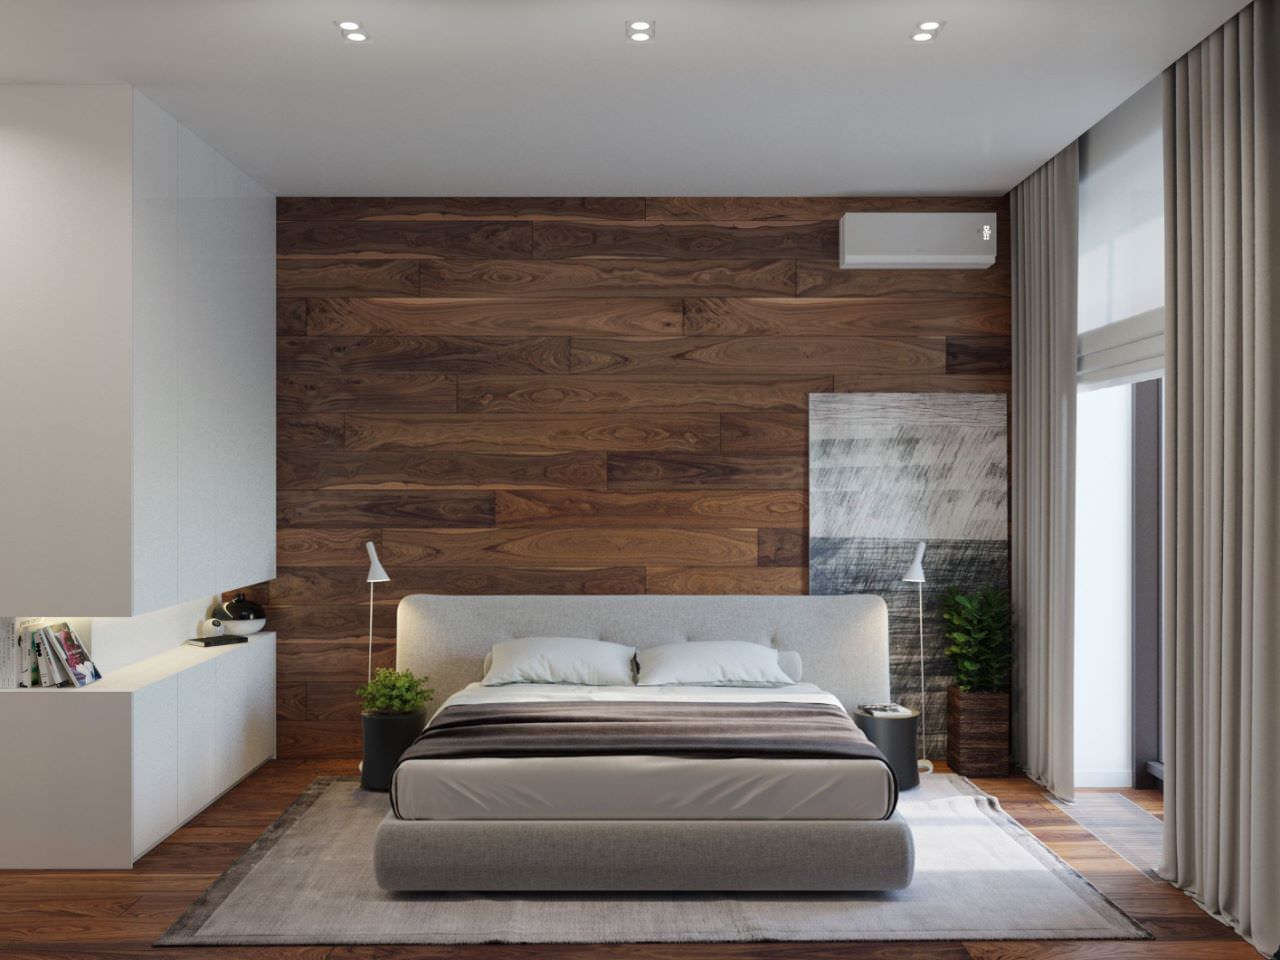 Phòng ngủ ốp gạch giả gỗ màu nâu trầm tạo cảm giác thoải mái, thư giãn, ấm cúng